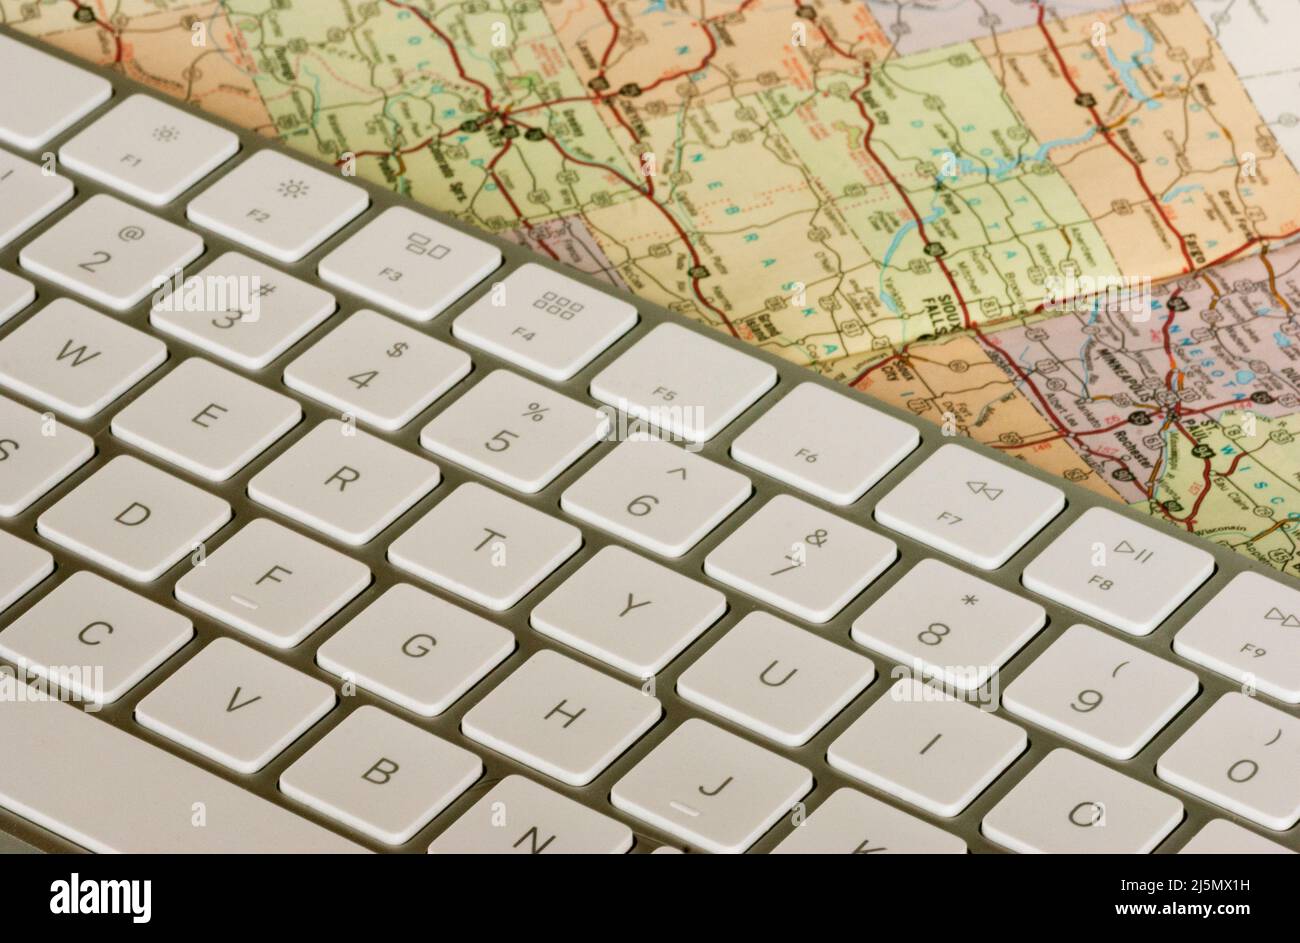 Clavier d'ordinateur de plus près avec carte papier montrant les villes et les itinéraires de voyage. Banque D'Images